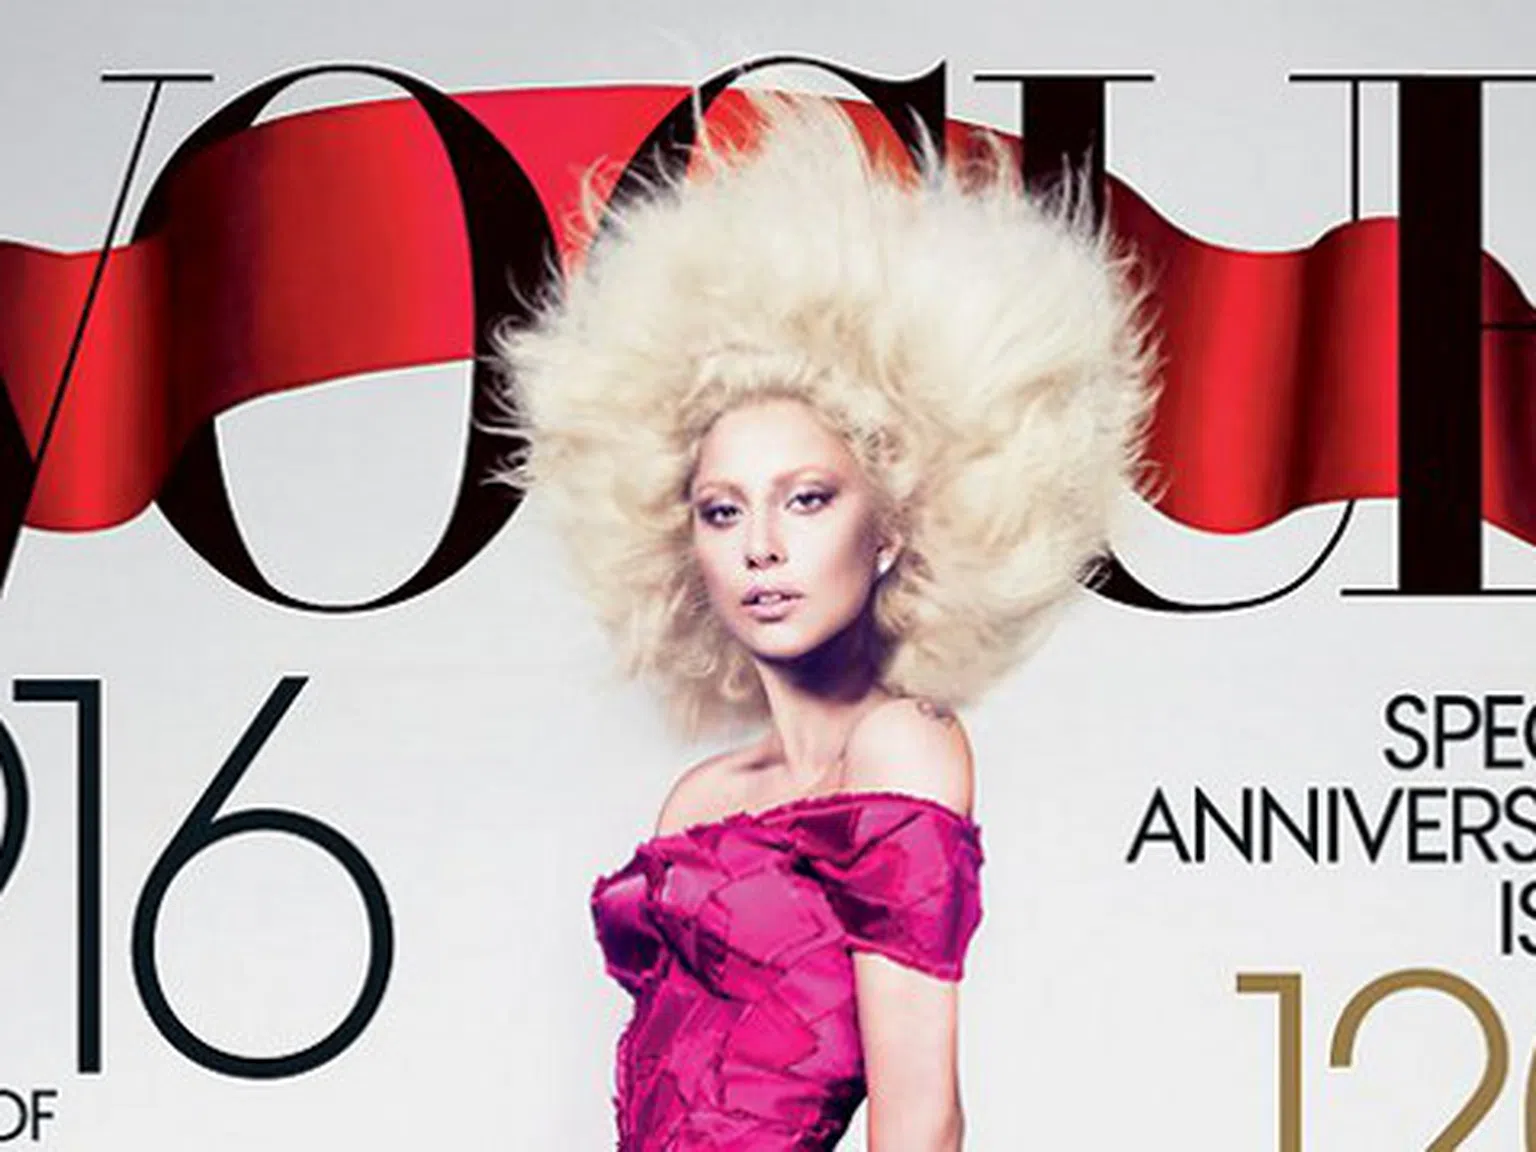 Специално издание на "Vogue" в 916 страници